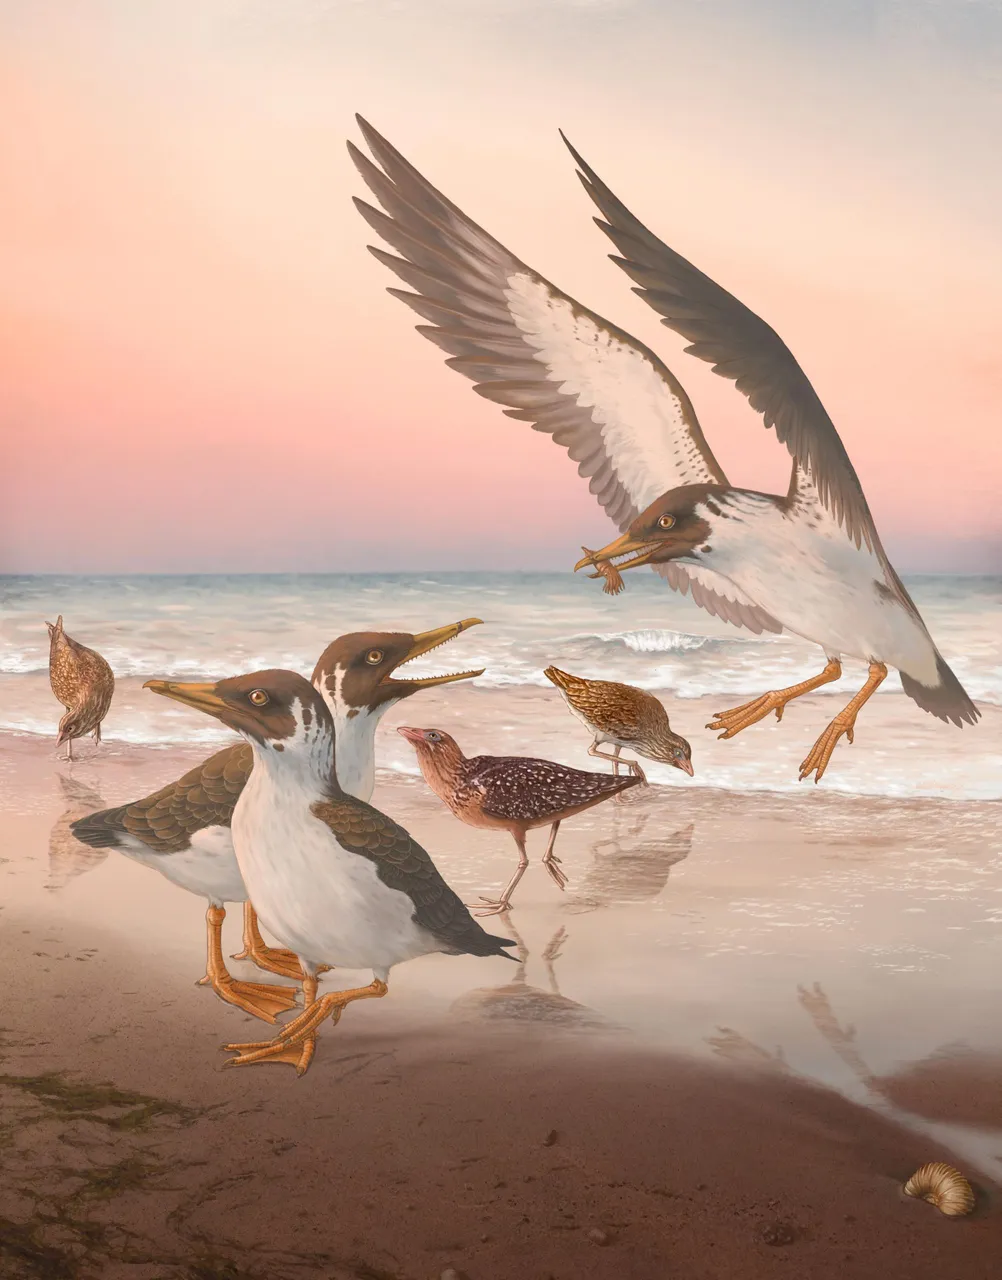 “向后进化”的发现颠覆了人们对现代鸟类起源的一个多世纪的认识